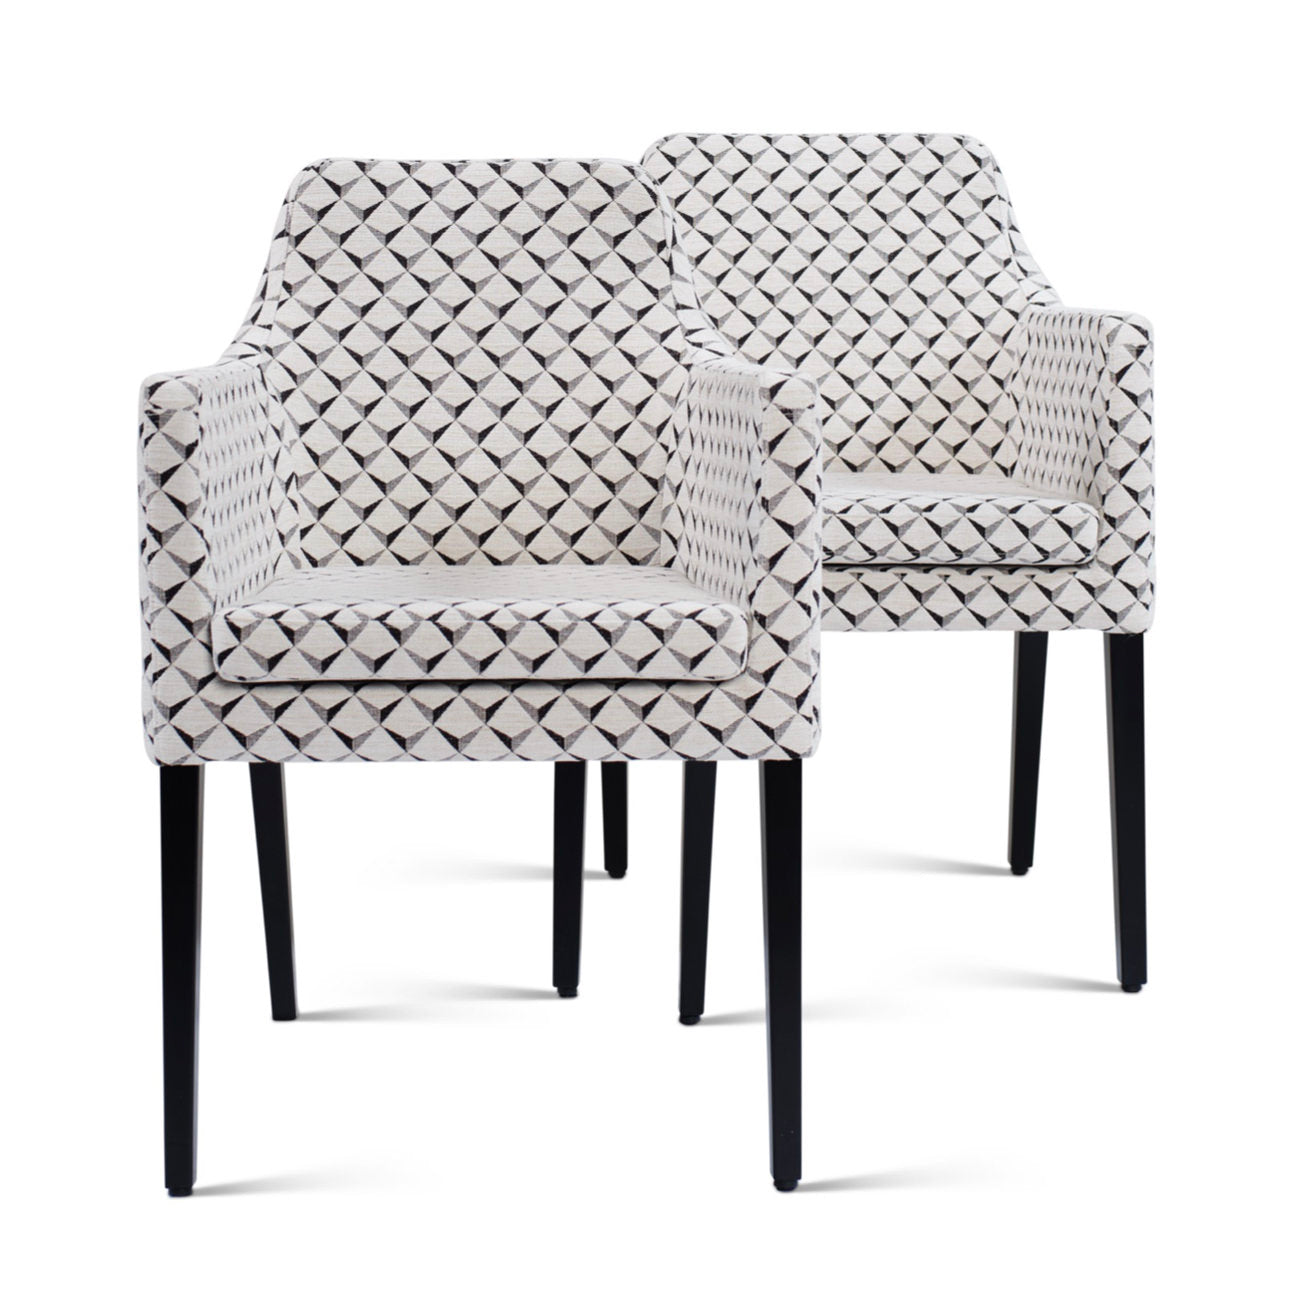 ALLEGRA chair by Christine Kröncke Interior Design